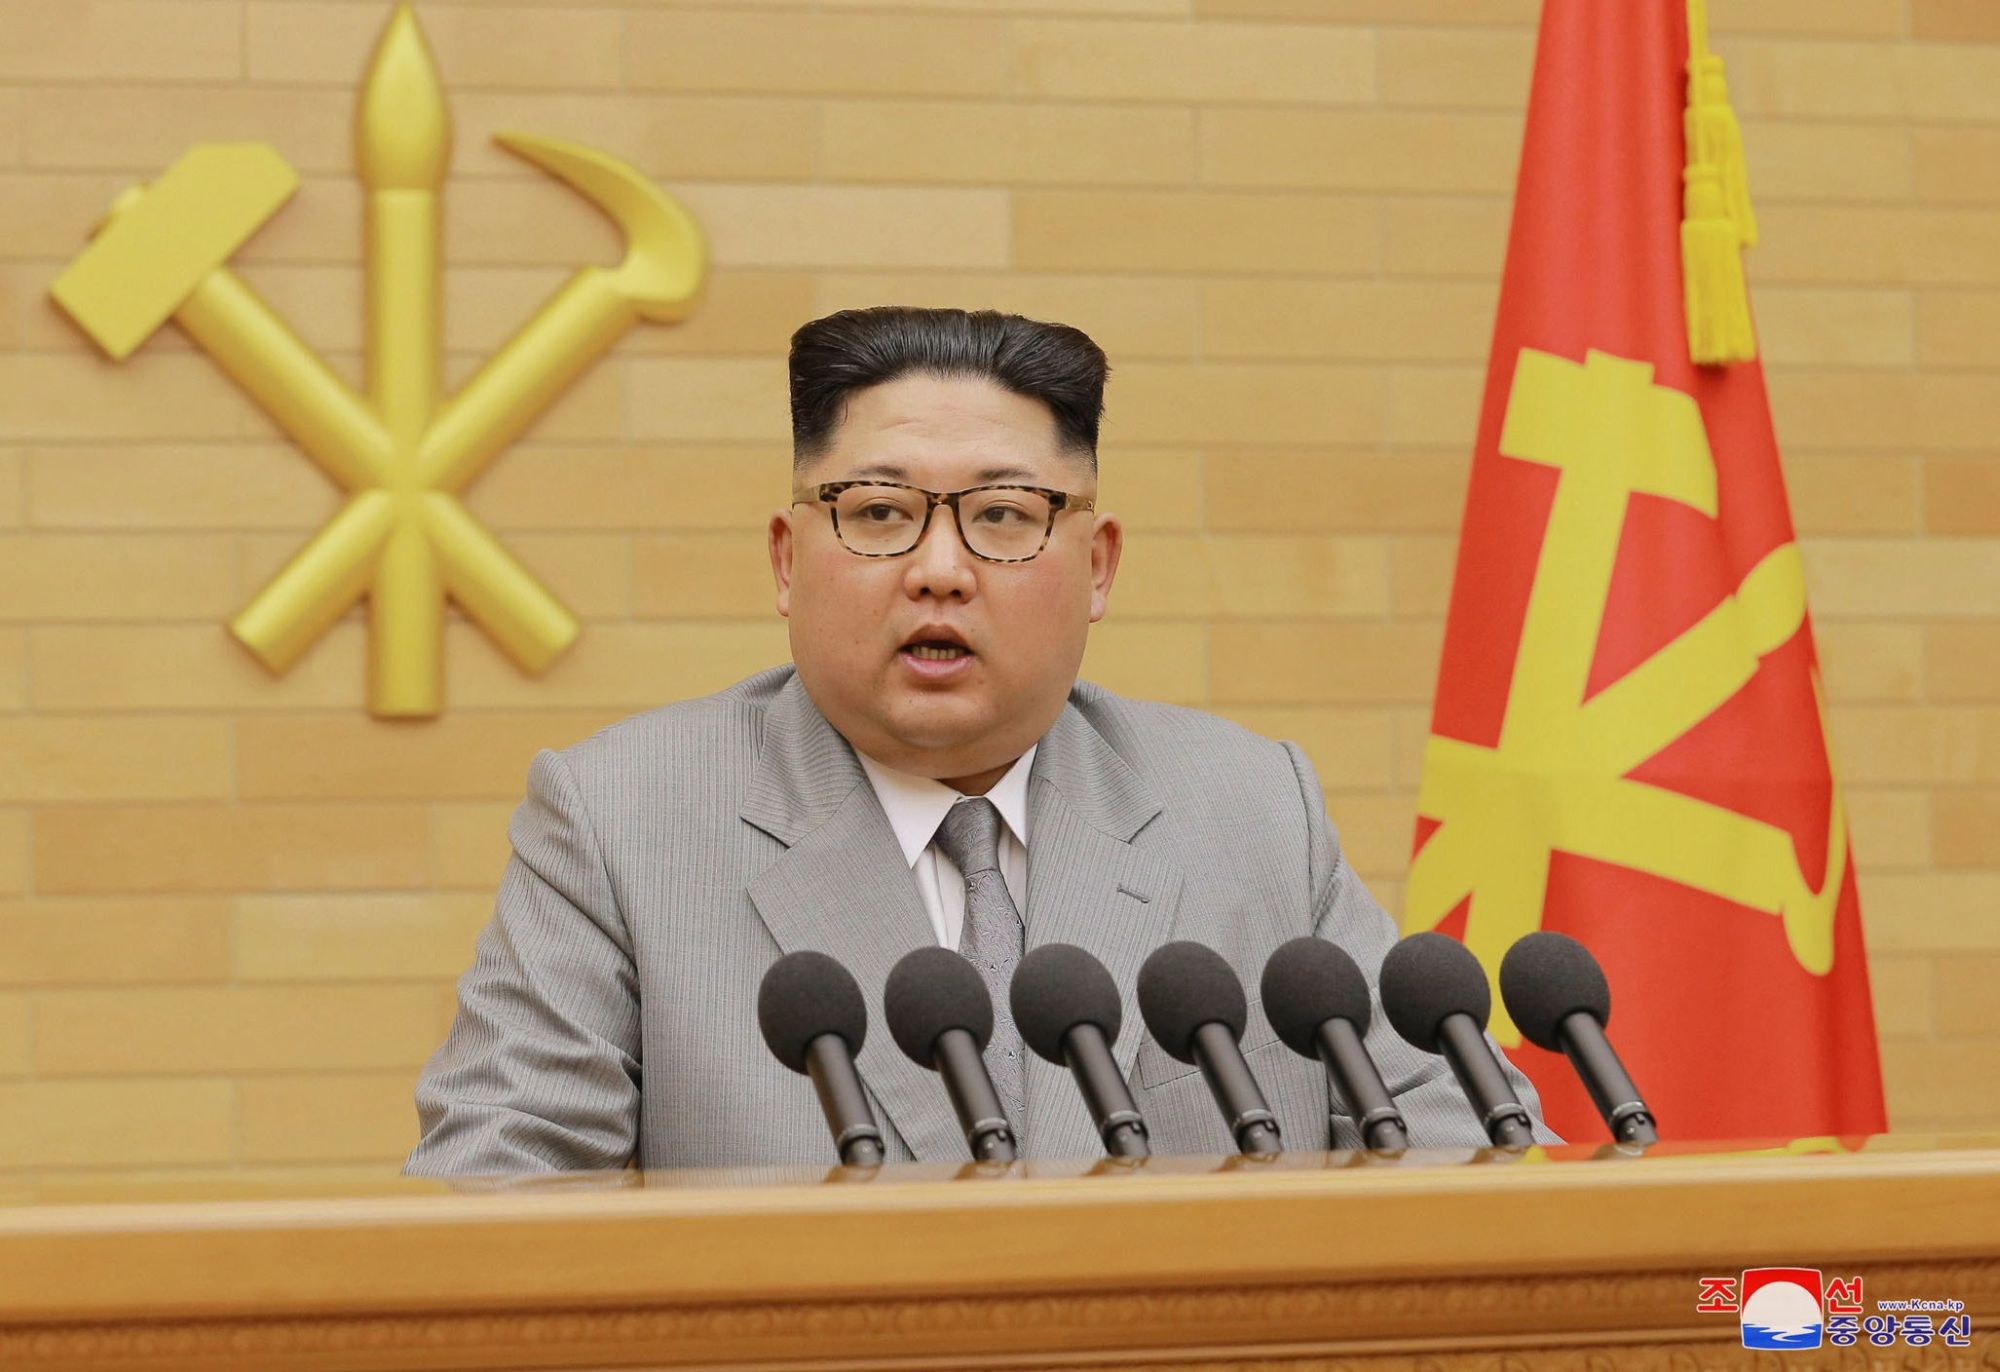 Az észak-koreai kormányzat által közreadott képen Kim Dzsong Un elsőszámú észak-koreai vezető, a kommunista Koreai Munkapárt első titkára újévi beszédét mondja 2018. január 1-jén, meg nem nevezett helyszínen. A vízjel koreai felirata a KCNA észak-koreai hírügynökség nevét jelenti. (MTI/AP/KCNA/Korea News Service)